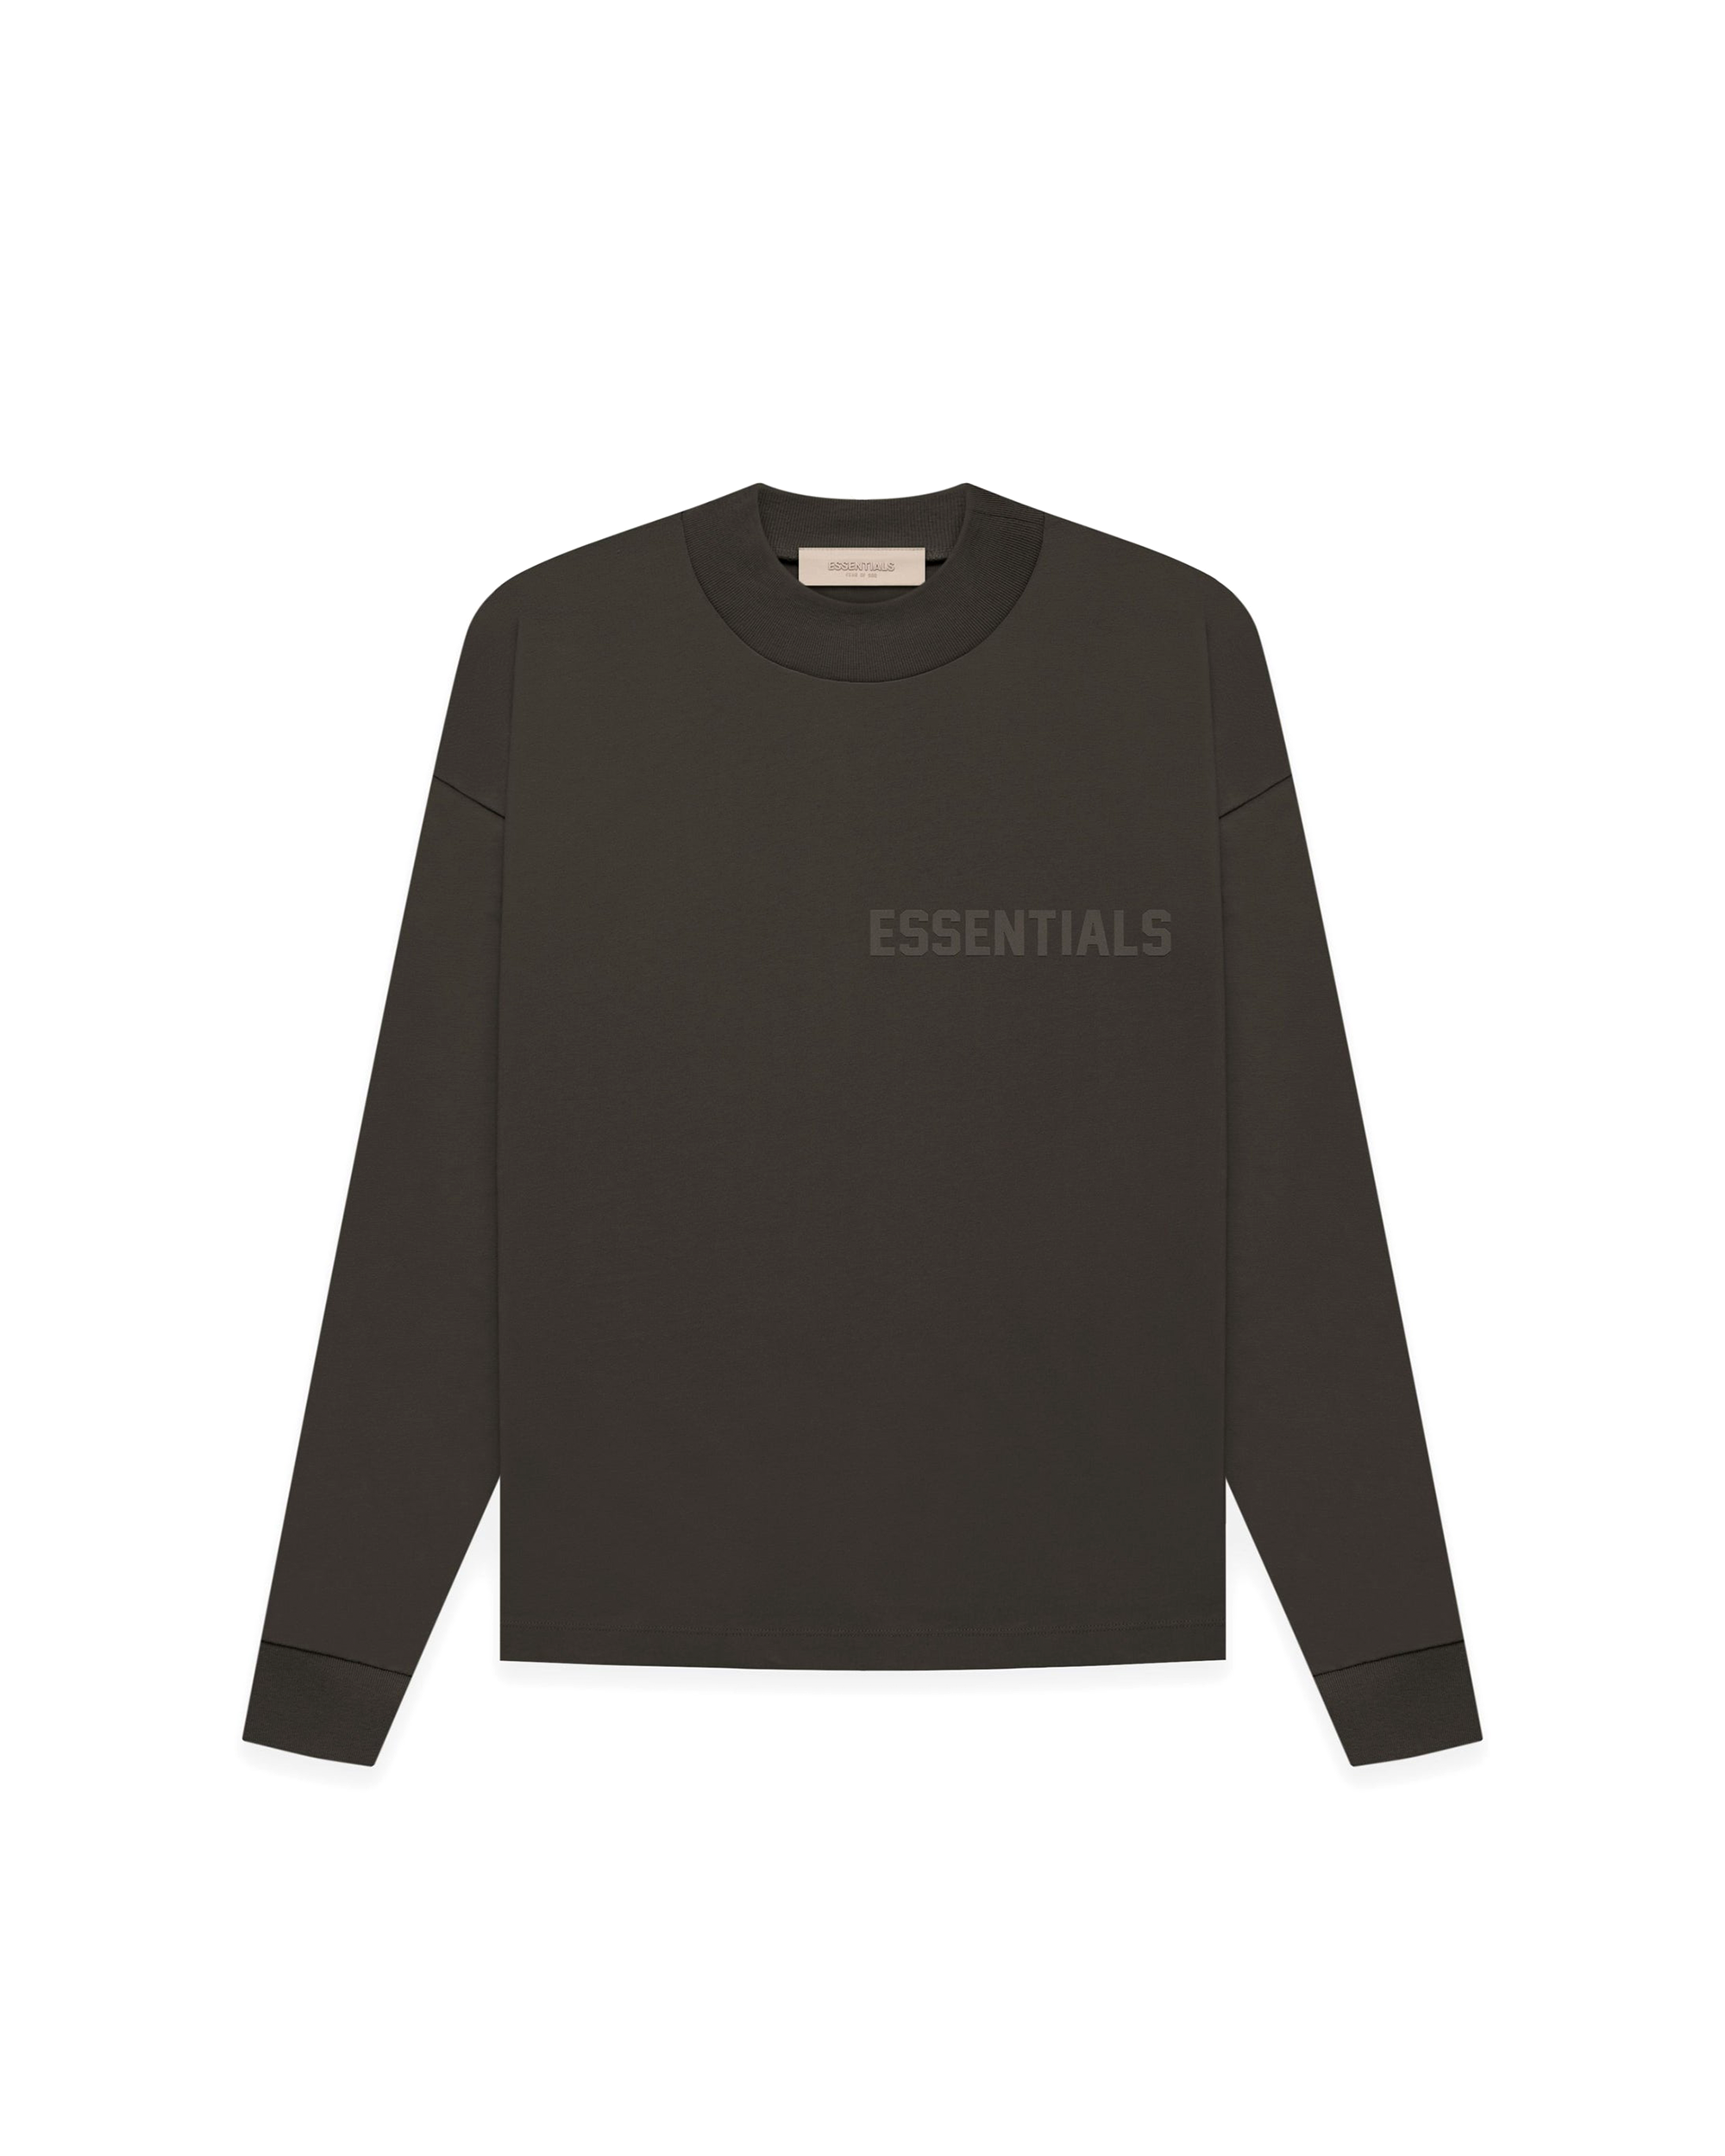 Essentials L/S T-Shirt - Off-Black